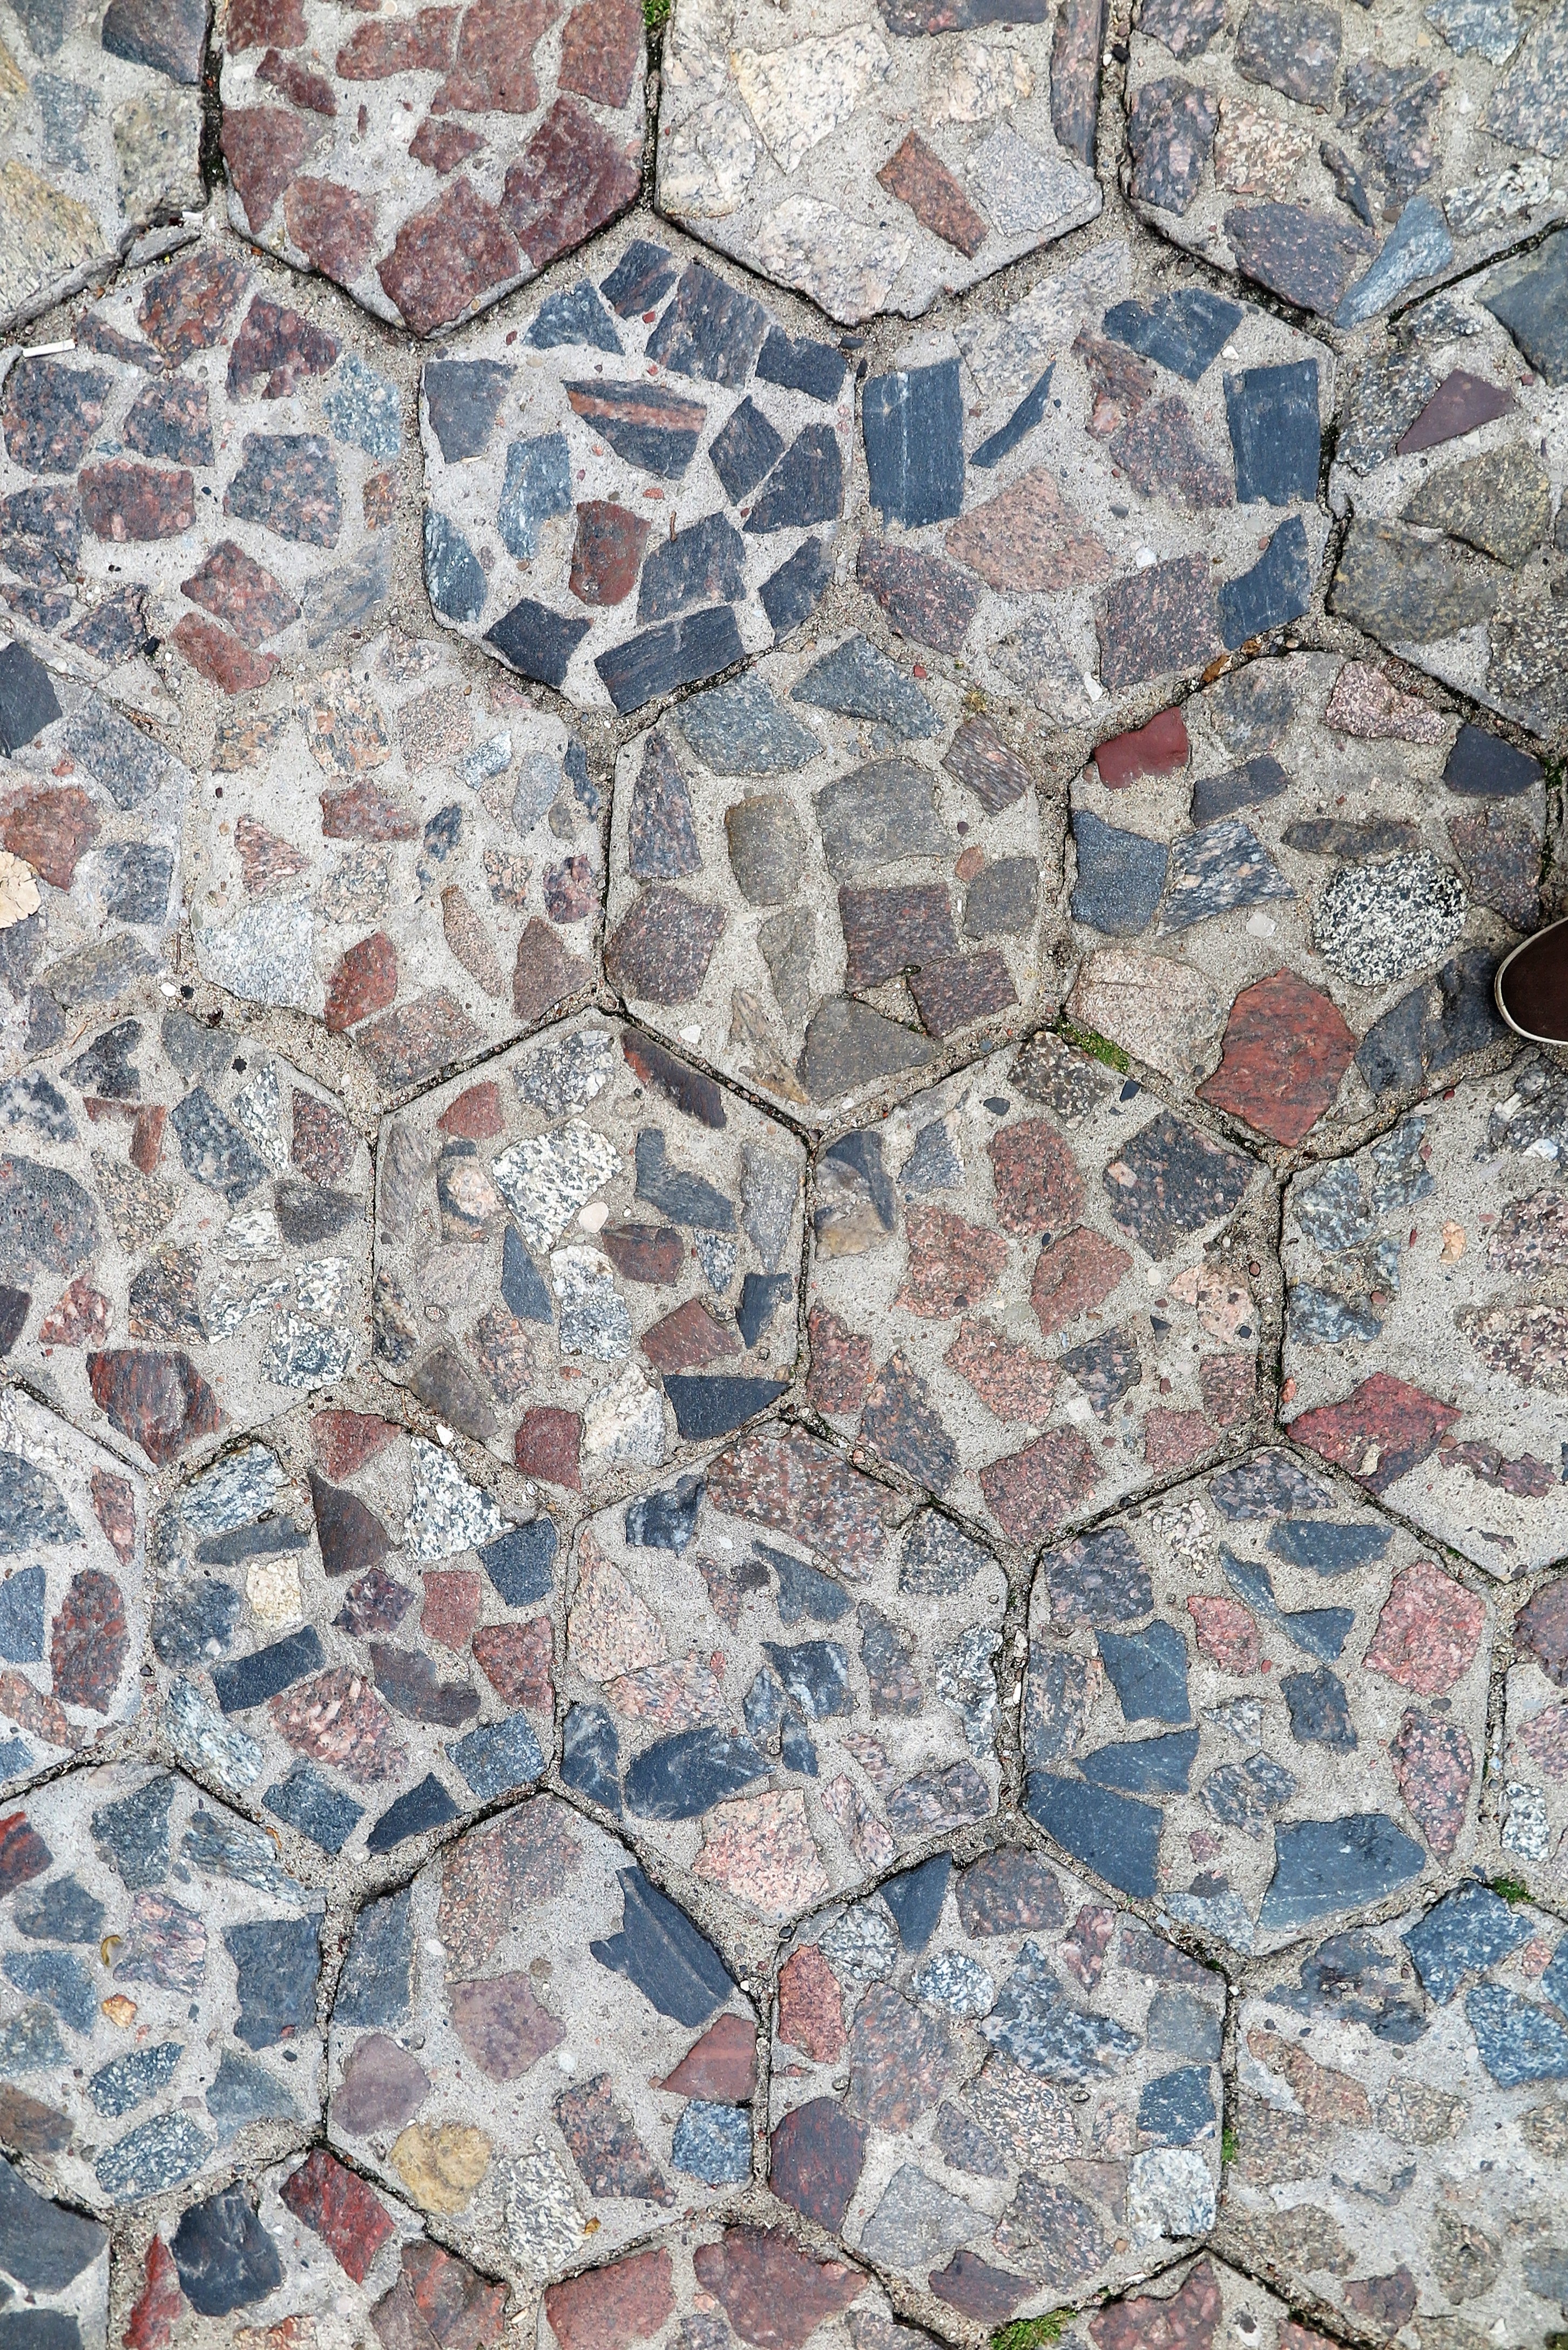 Betonowa kostka sześciokątna tzw. trylinka (od nazwiska Tryliński), z powierzchnią wyłożoną naturalnymi kamieniami, stosowana w latach 30. XX w. i po wojnie (detal)